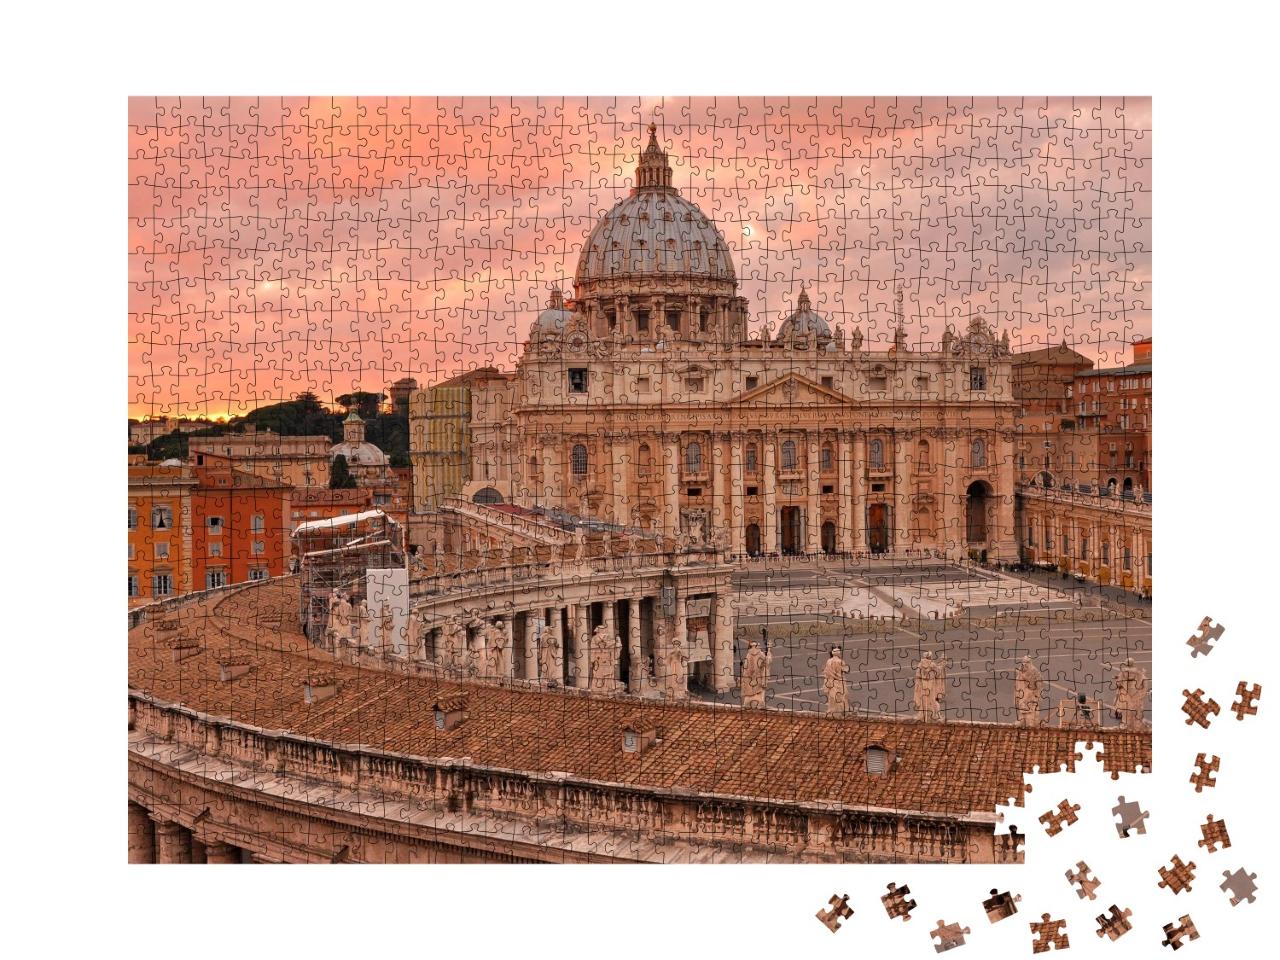 Puzzle de 1000 pièces « Place Saint-Pierre et cathédrale au coucher du soleil, Vatican, Rome »